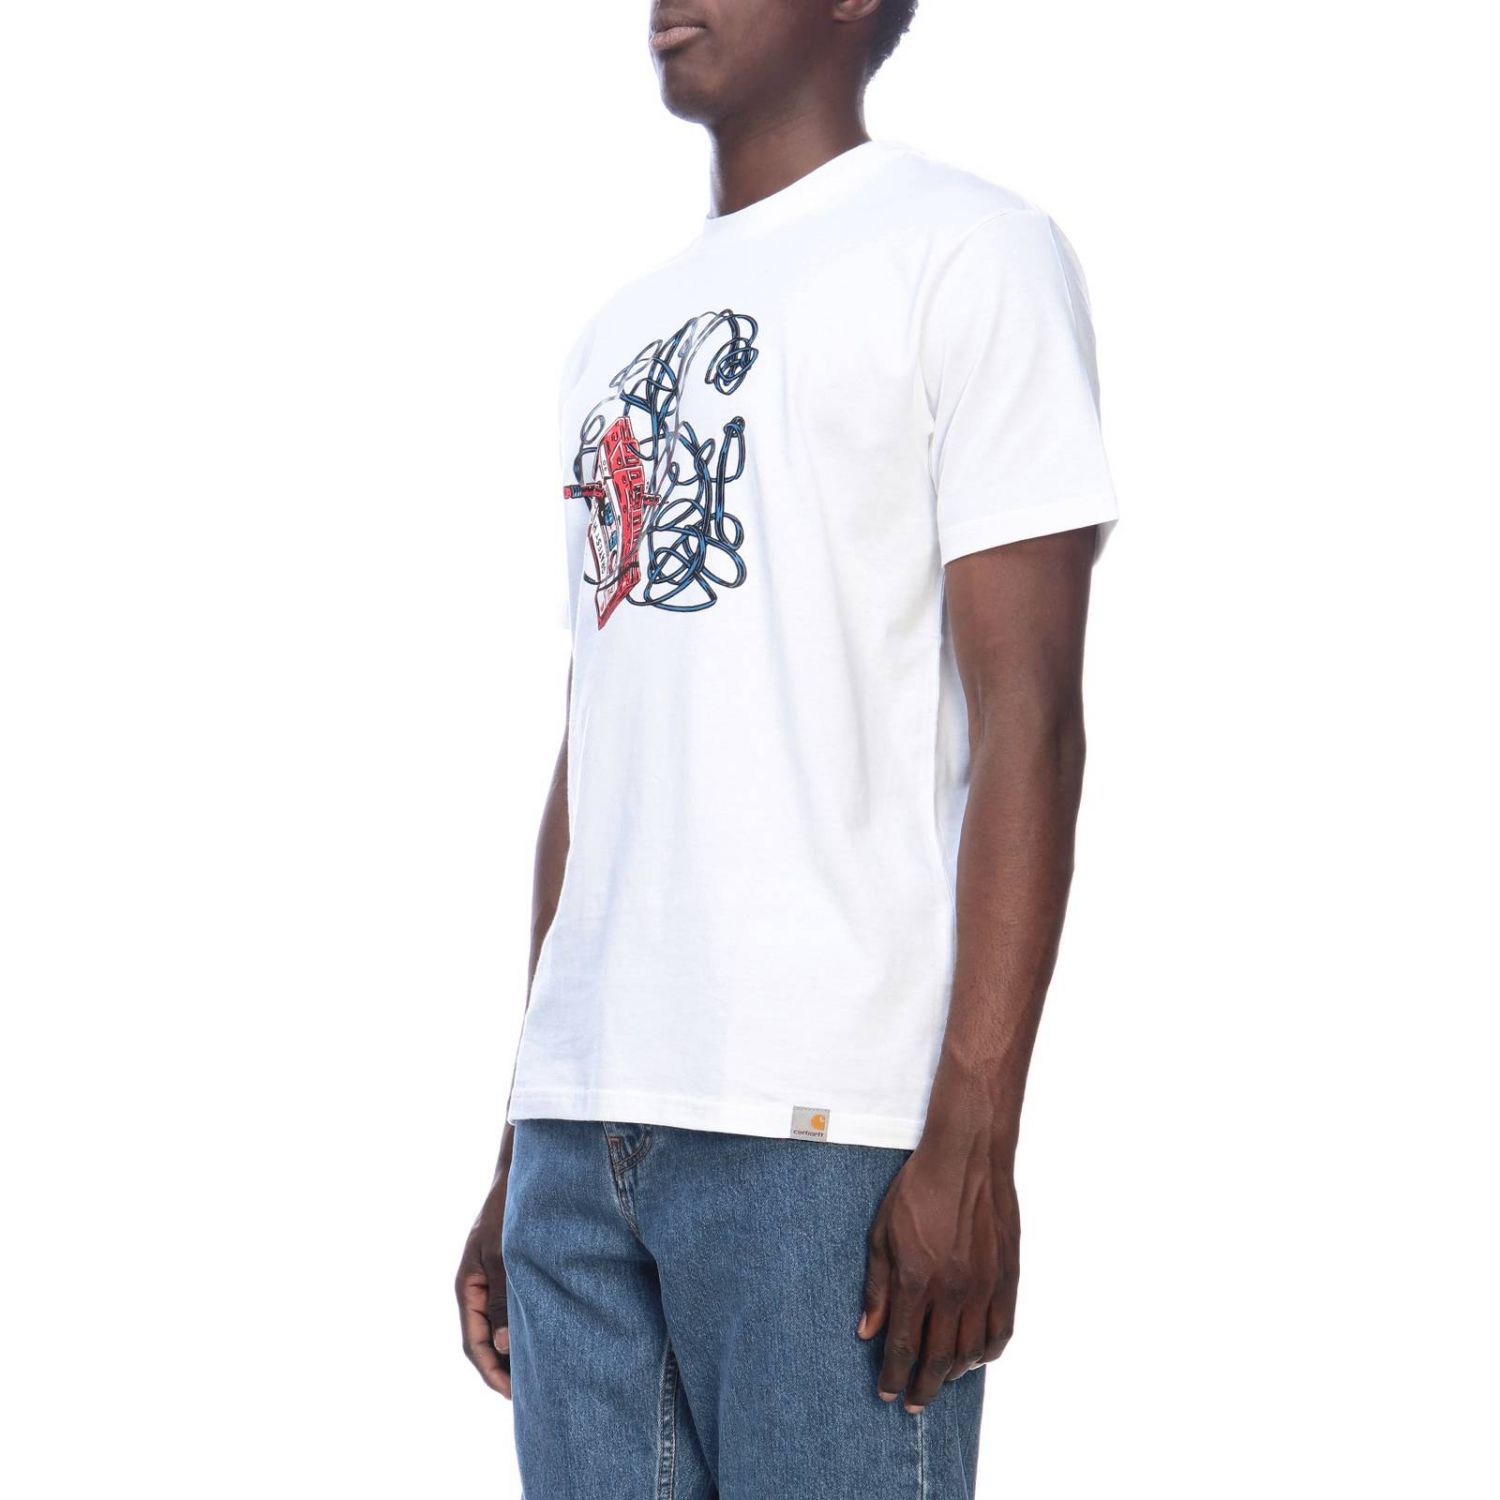 Carhartt Outlet: T-shirt men | T-Shirt Carhartt Men White | T-Shirt ...